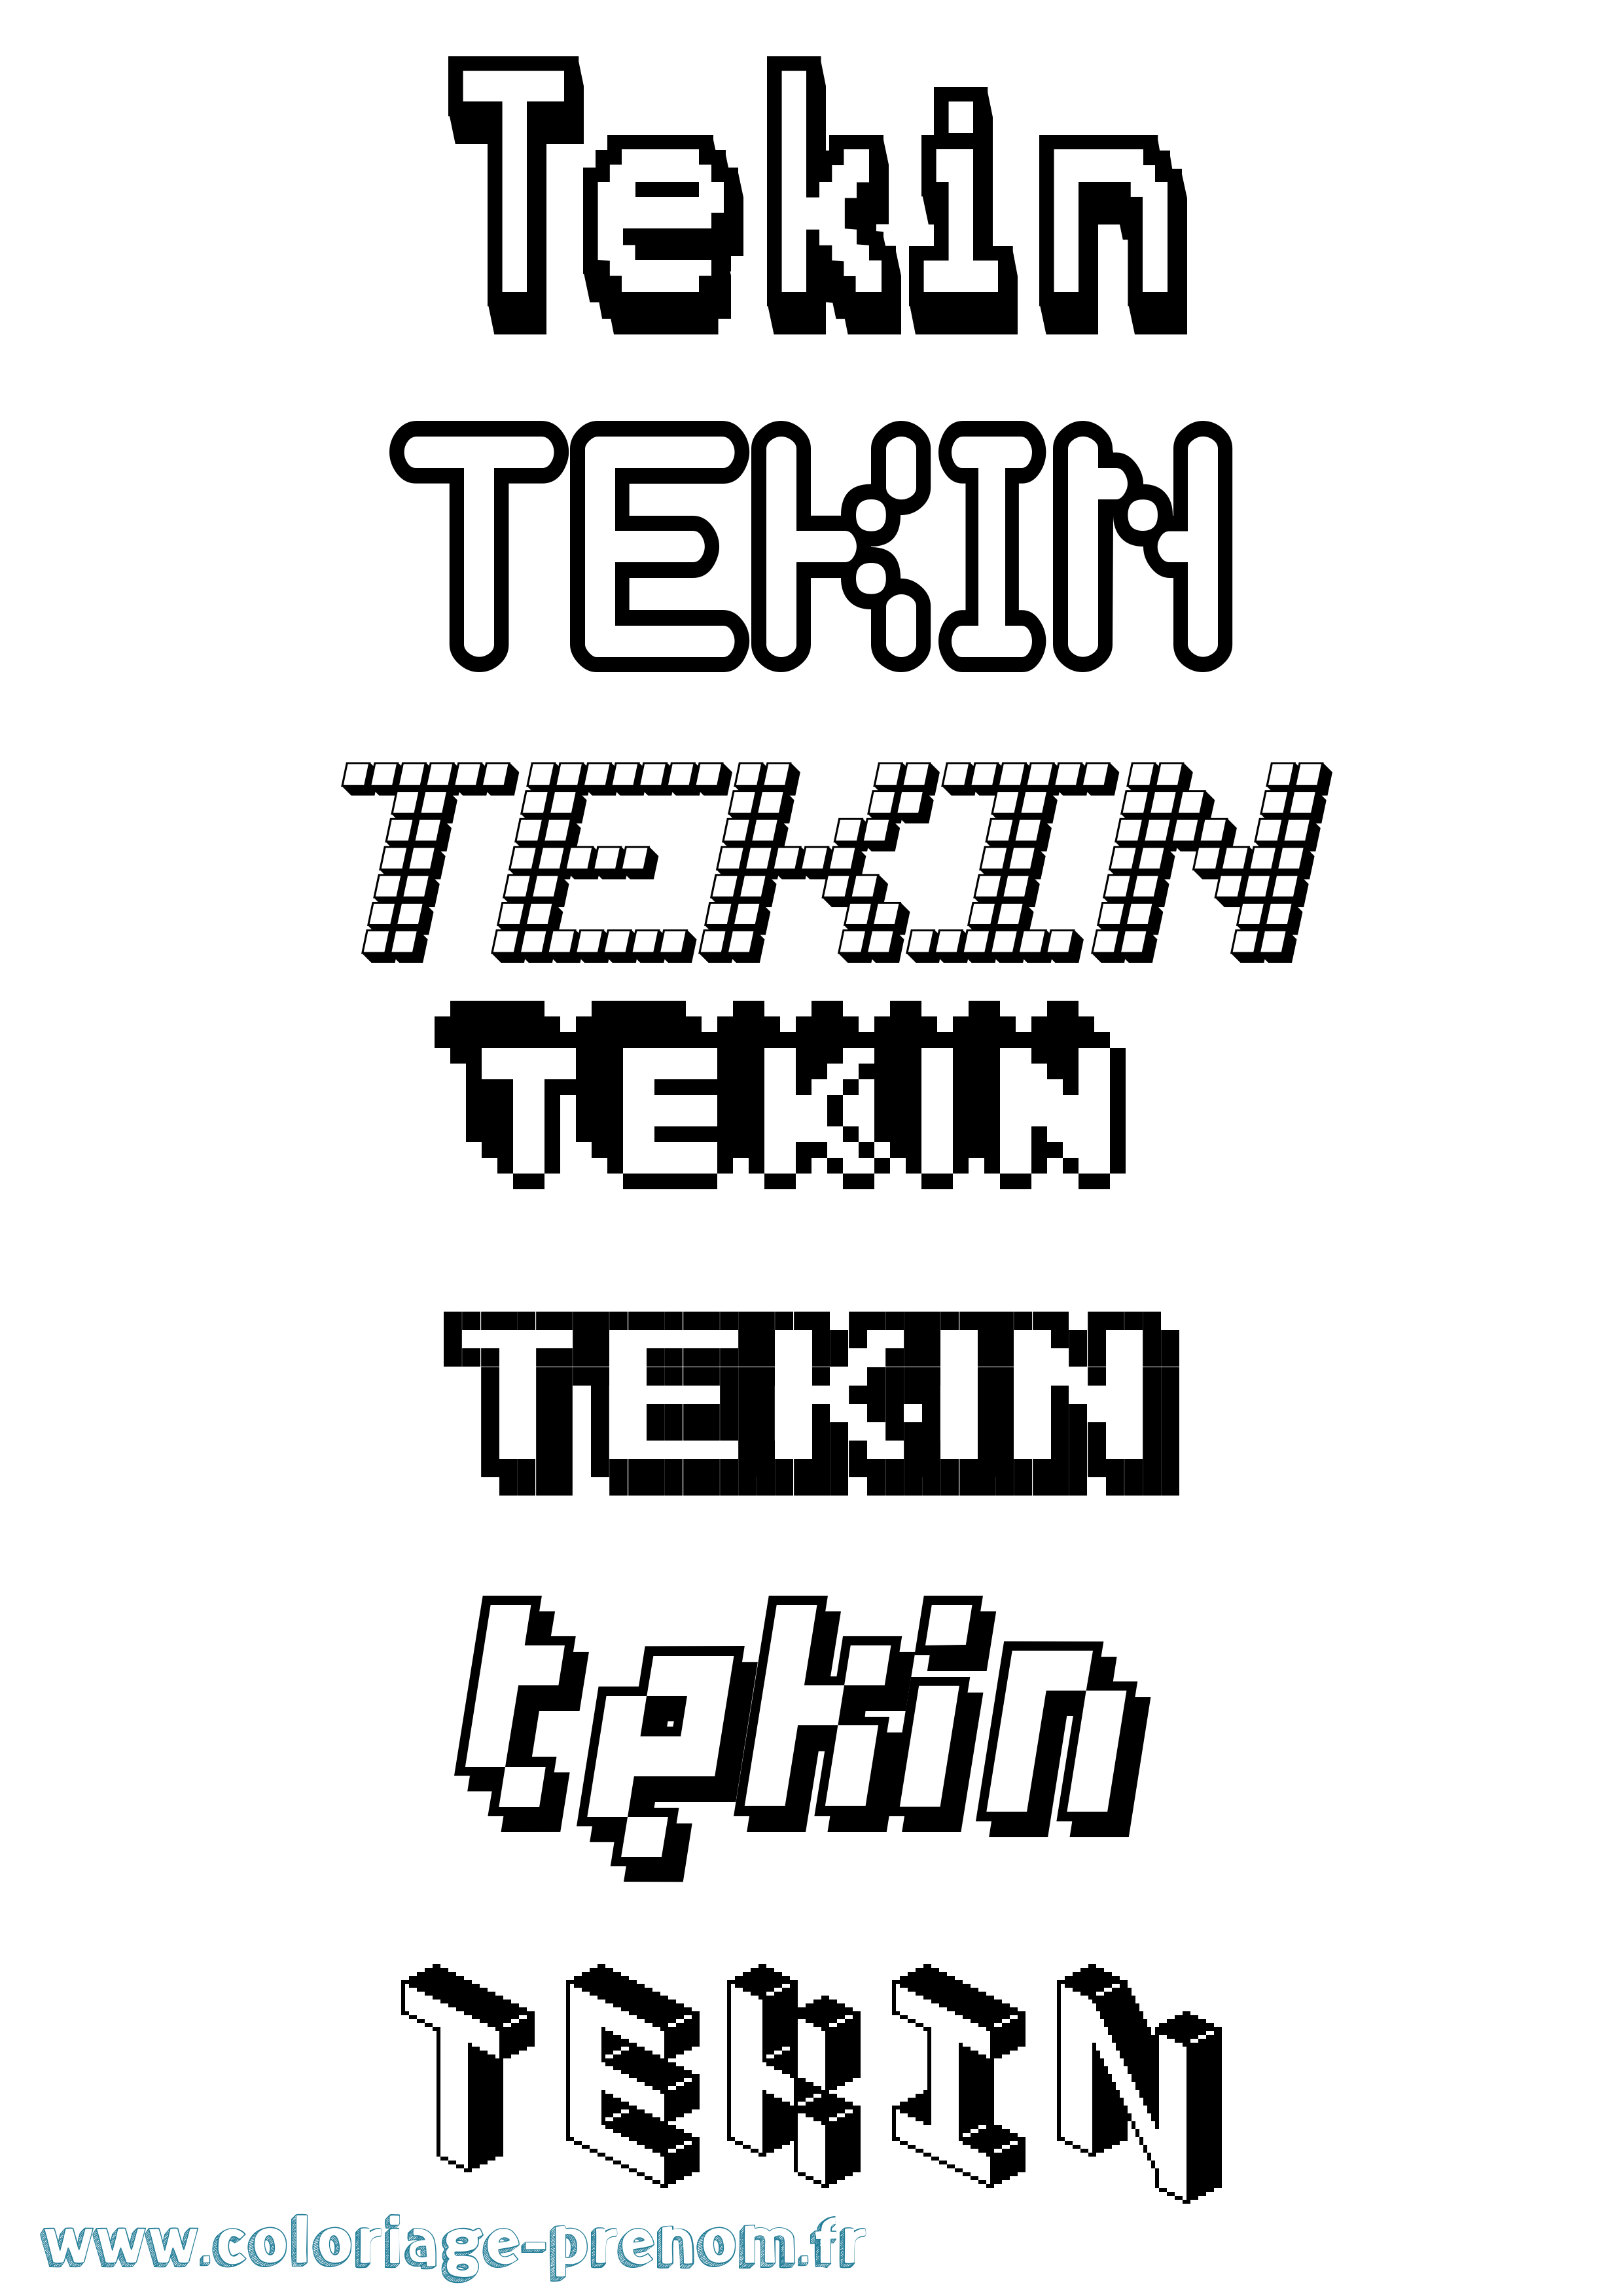 Coloriage prénom Tekin Pixel